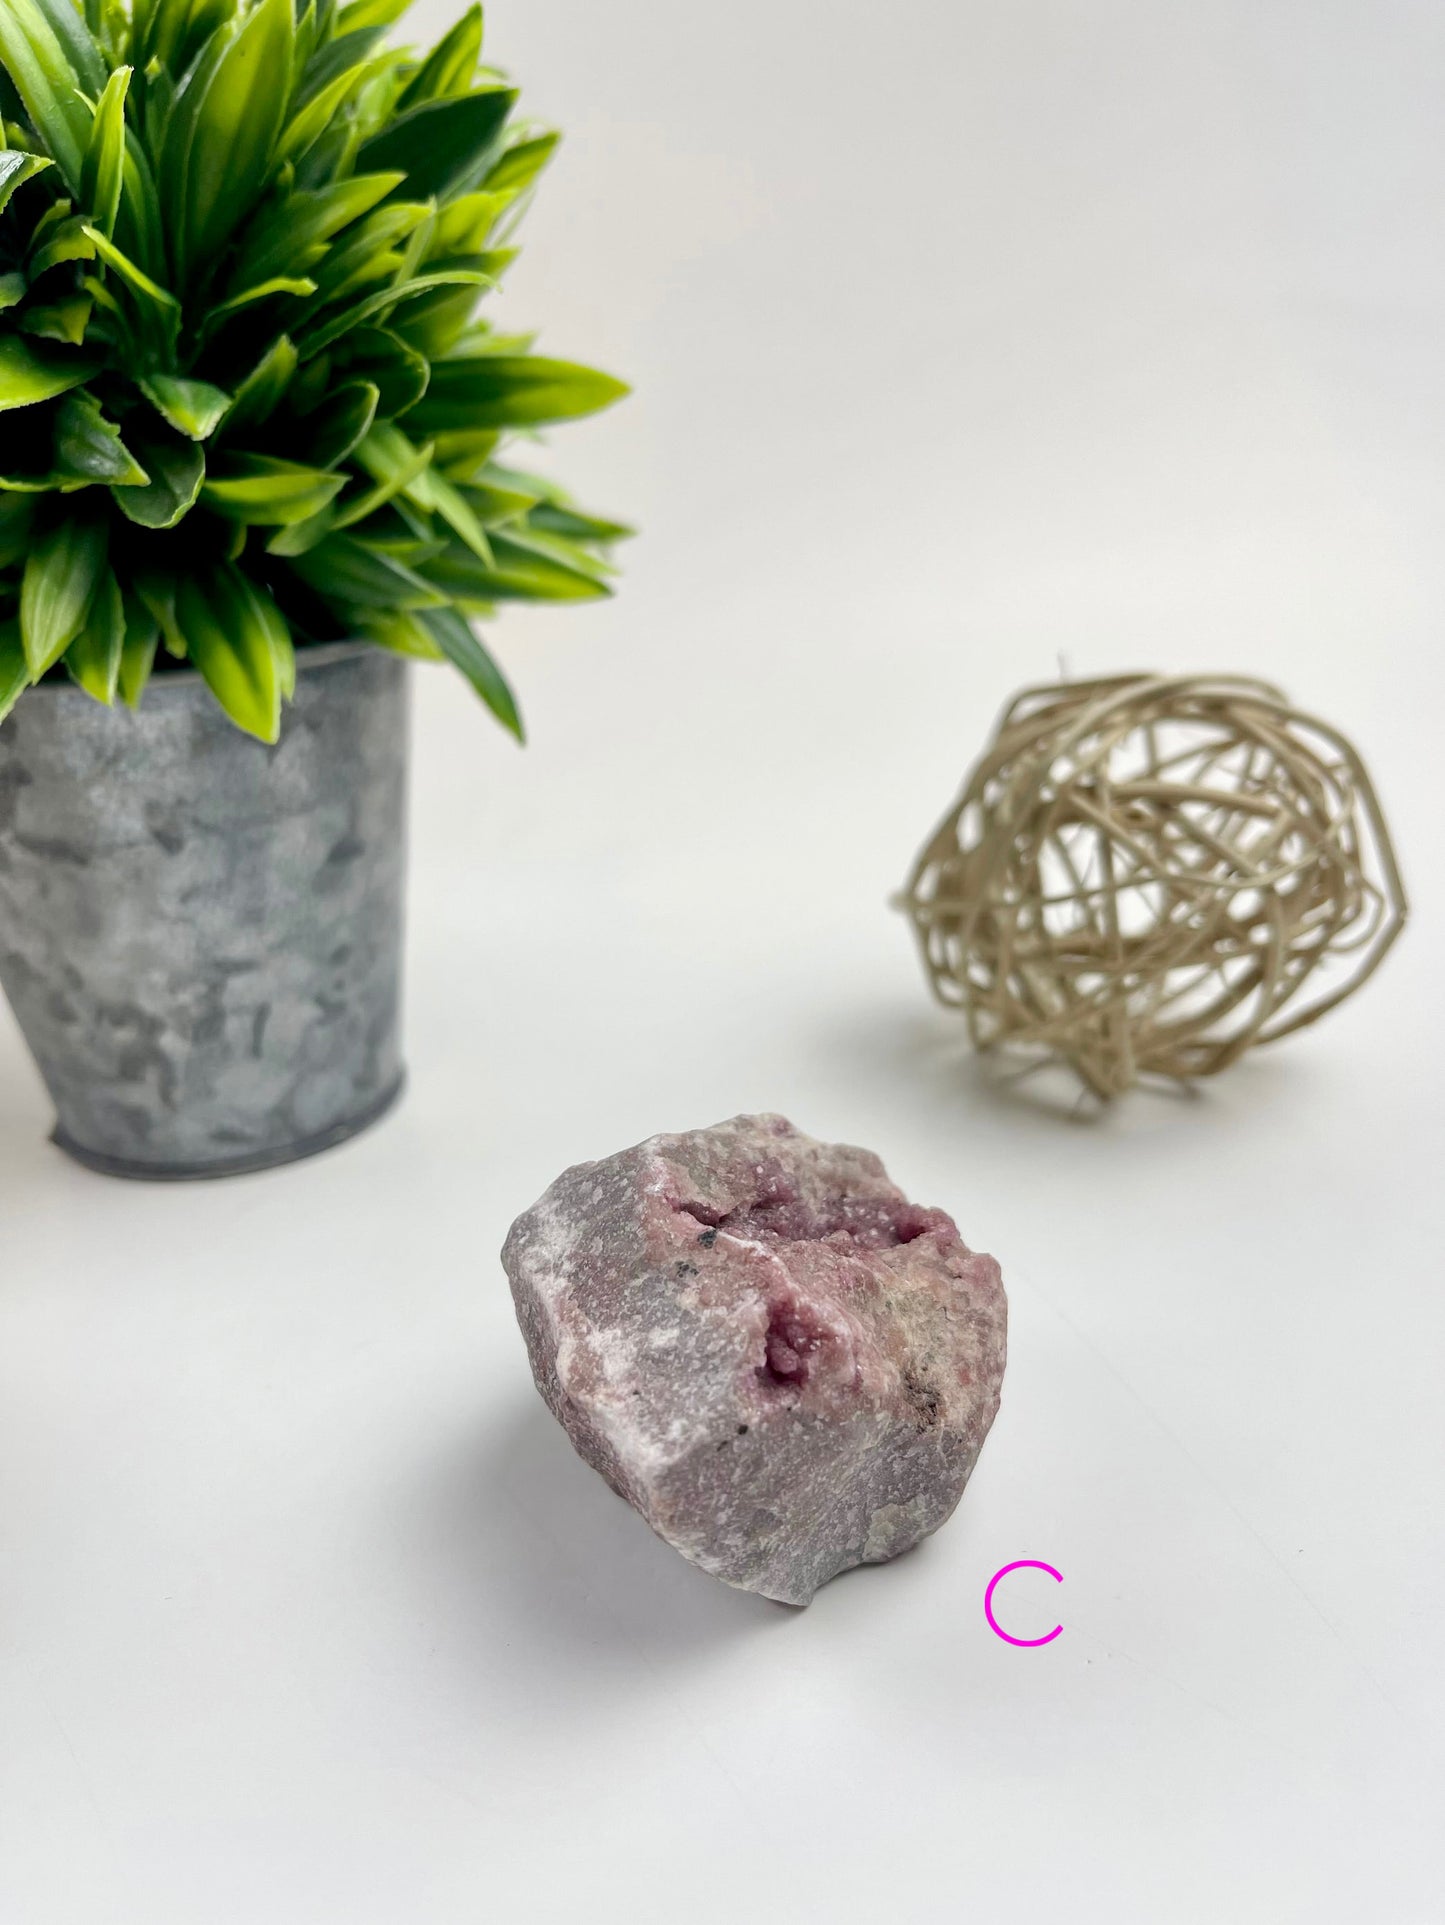 Pink Cobalto-Calcite Raw Specimen C